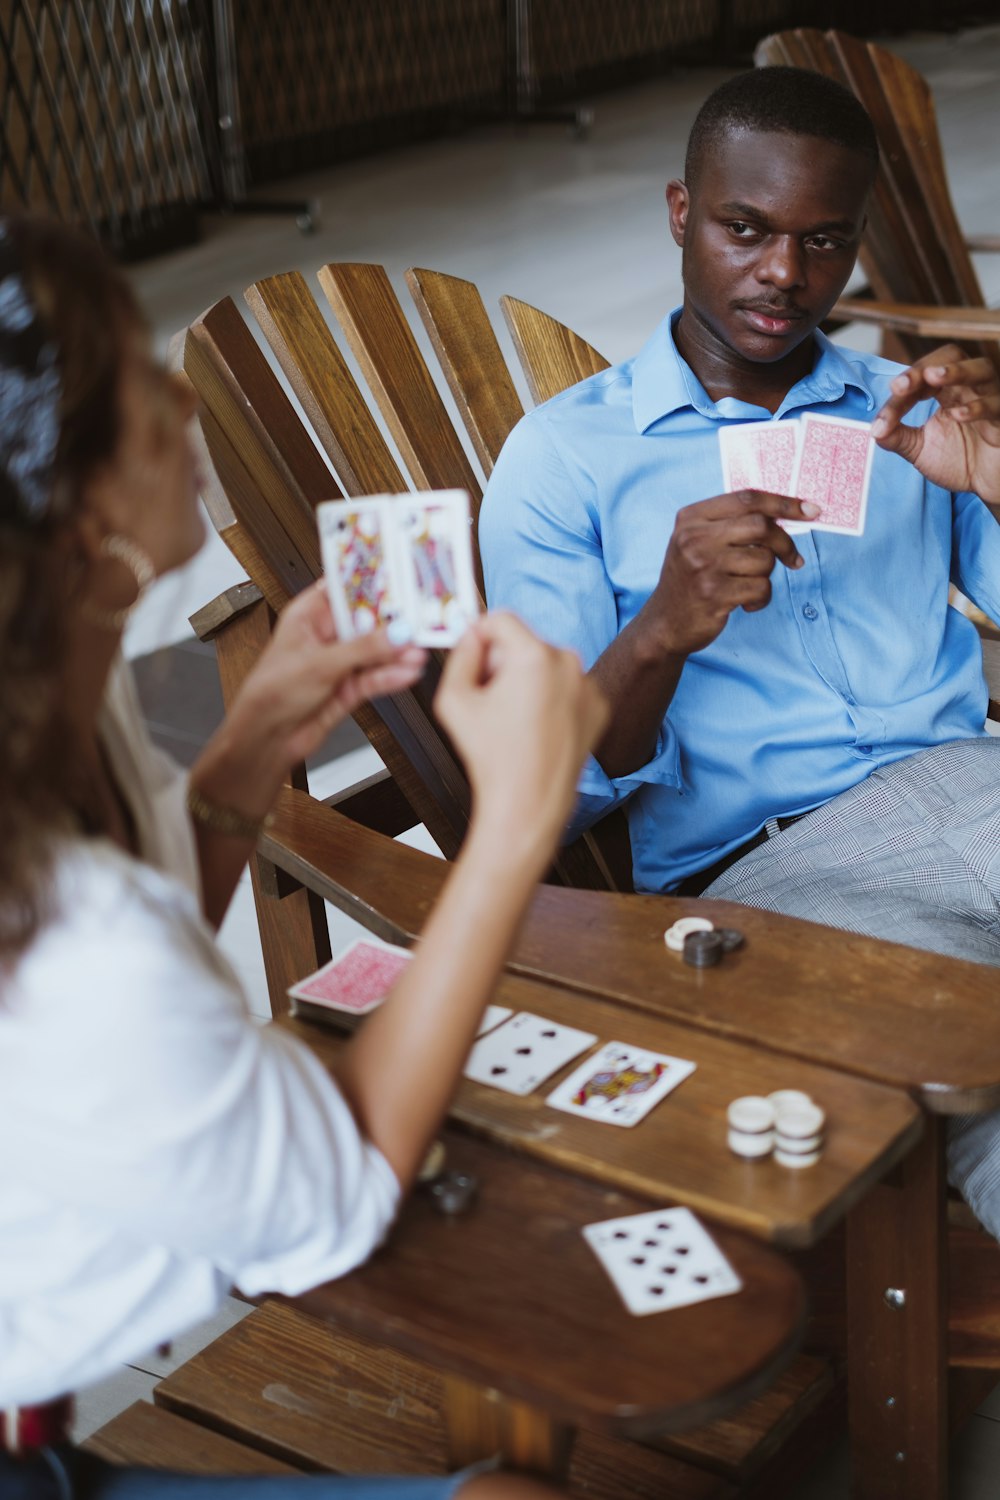 파란색 버튼 업 셔츠를 입은 남자가 카드 놀이를 들고 있다